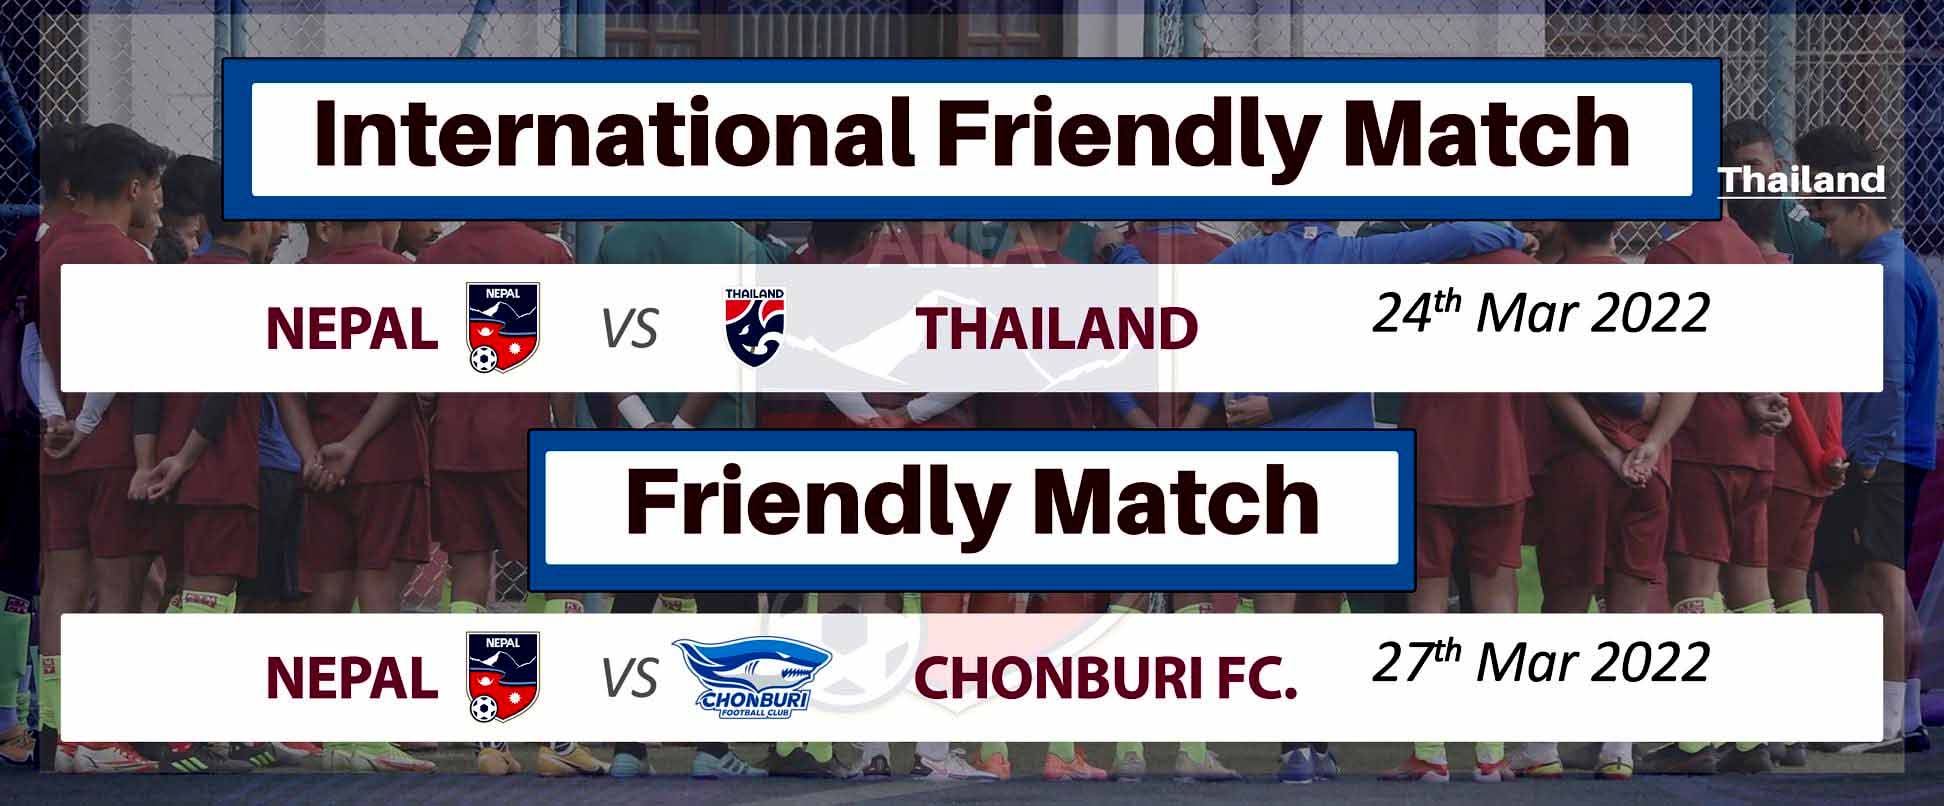 नेपालले थाइल्यान्डसँग मैत्रीपूर्ण फुटबल खेल खेल्ने